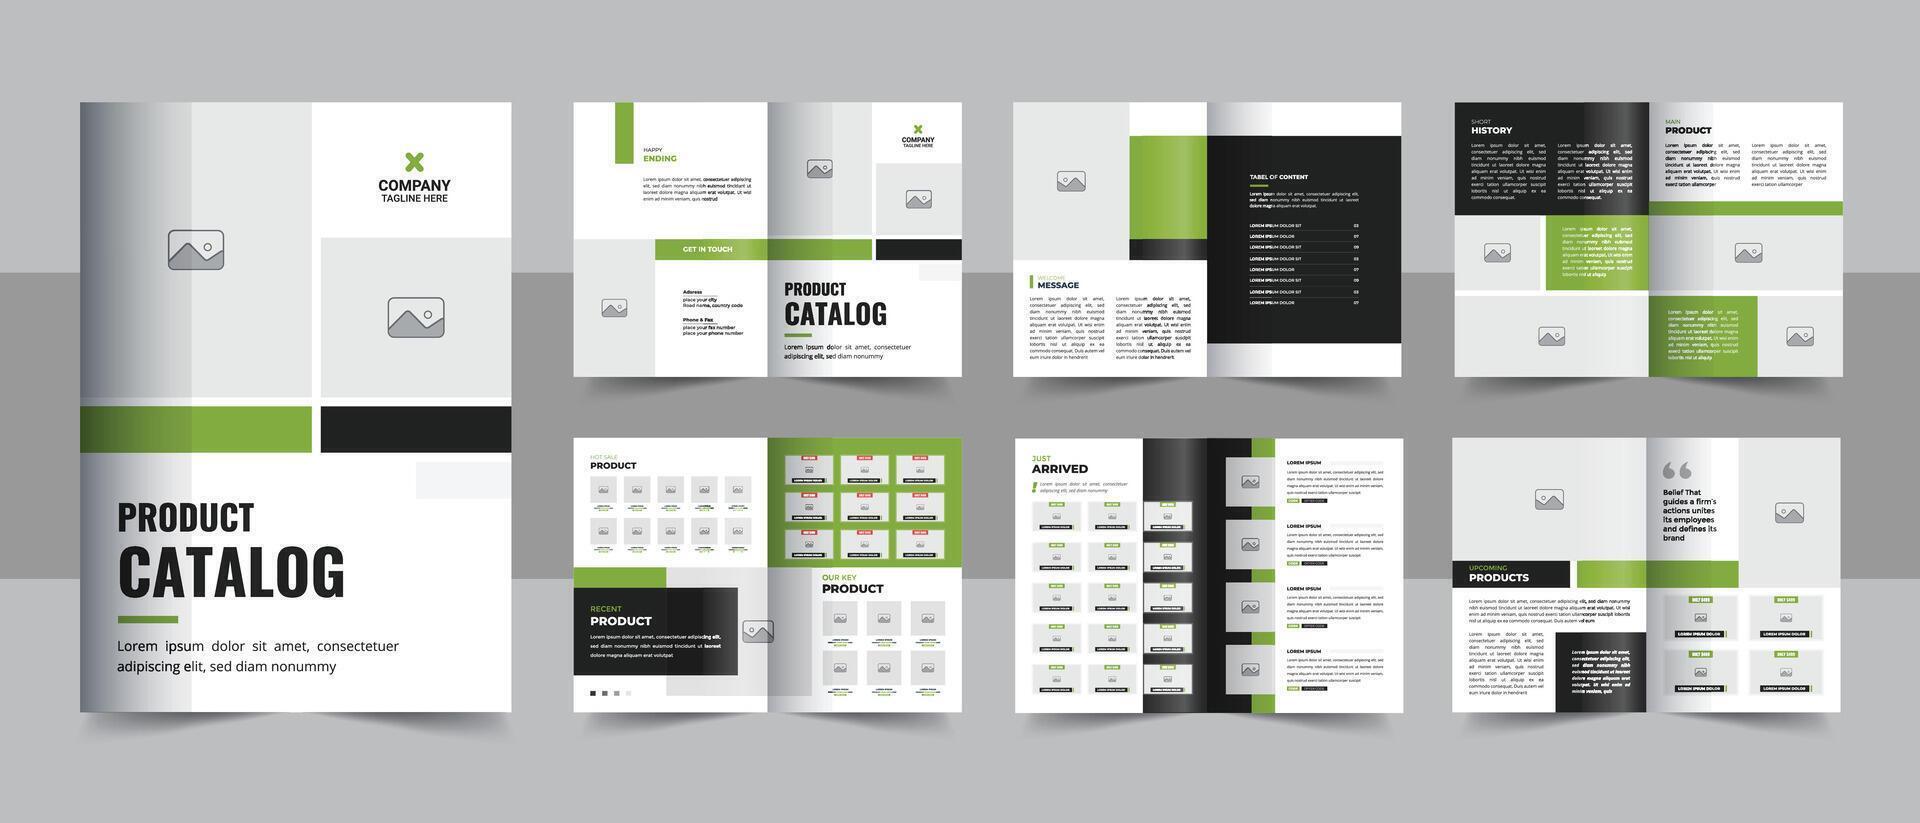 Mehrzweck Produkt Katalog Design, Unternehmen Möbel Produkt Katalog, Mehrere Seiten Katalog Broschüre, Unternehmen Profil und Produkt Portfolio Vorlage Design vektor